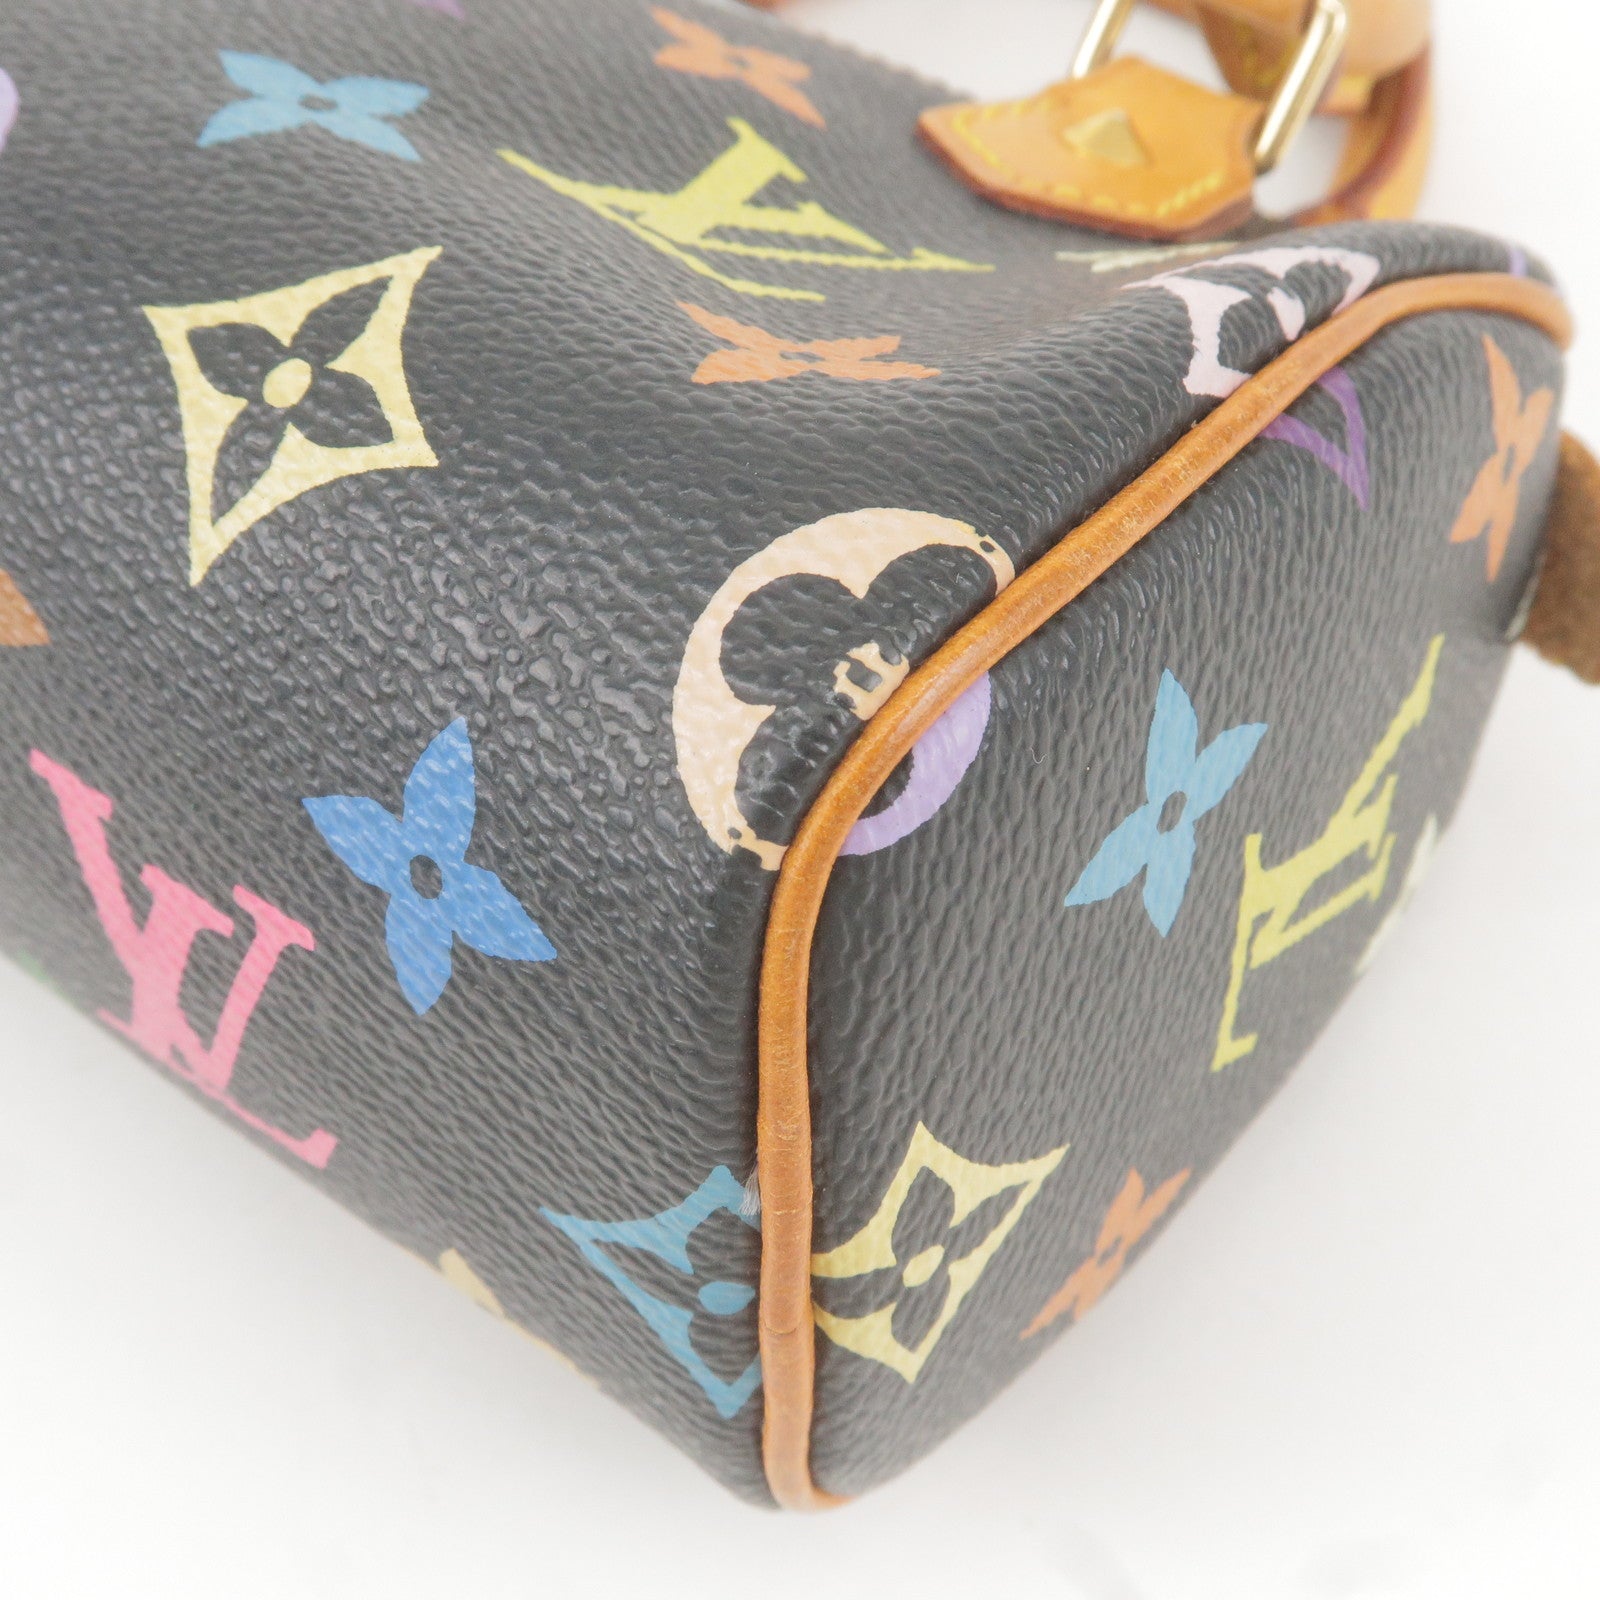 LOUIS VUITTON Mini Speedy 2way Shoulder Handbag Black Multicolor M9264